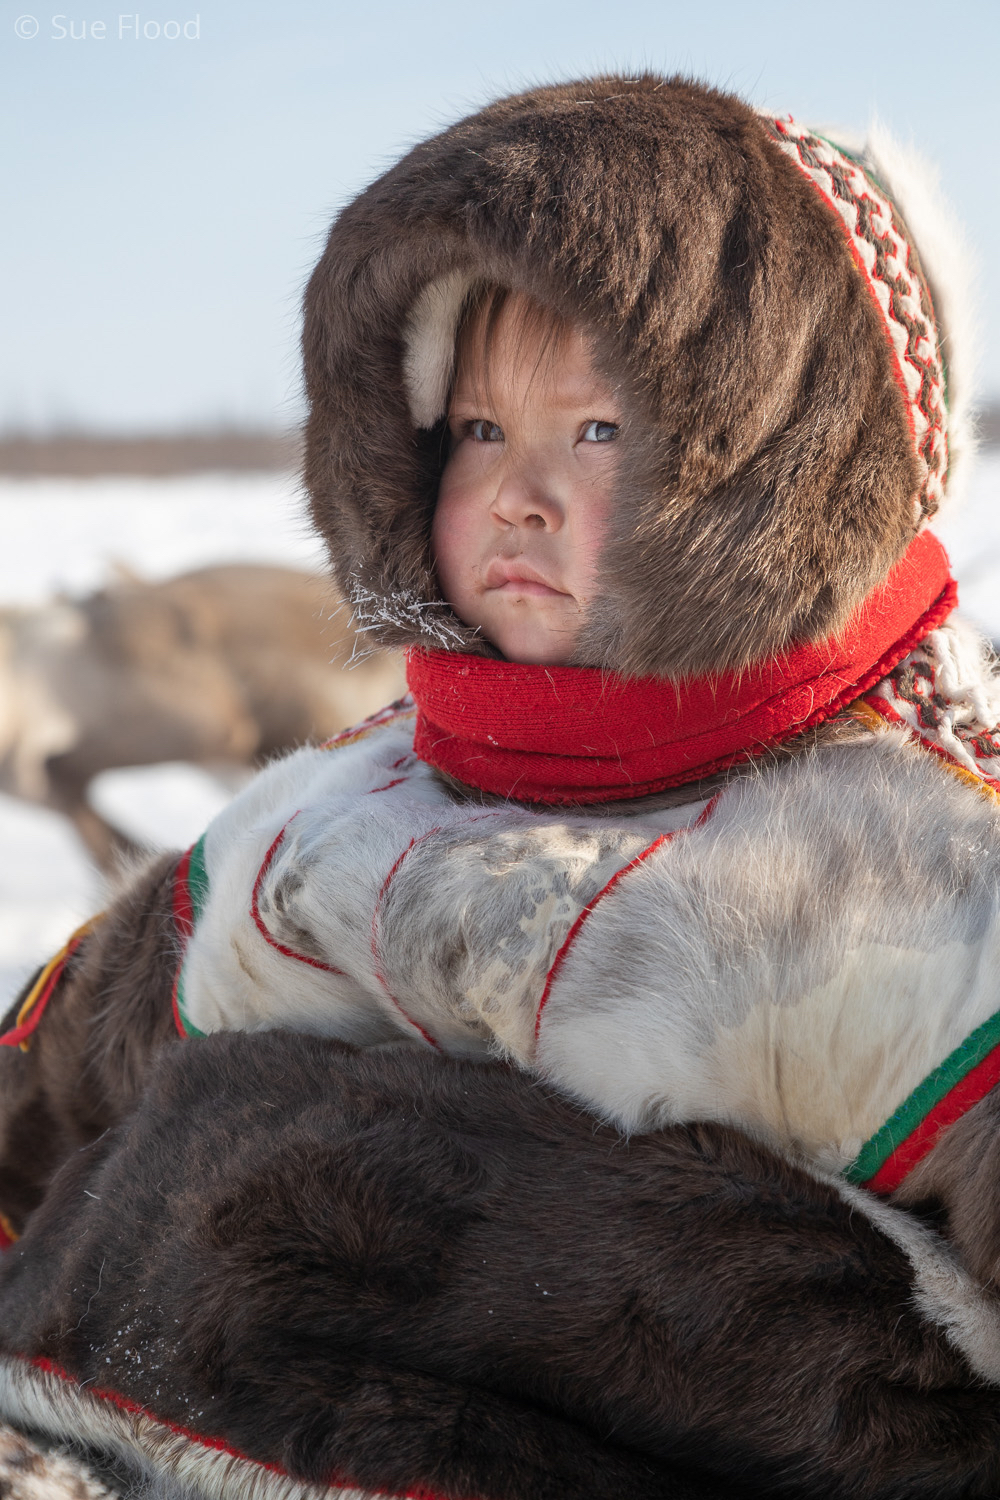 Nenets child on sledge during reindeer round up, Yamal peninsula, Siberia